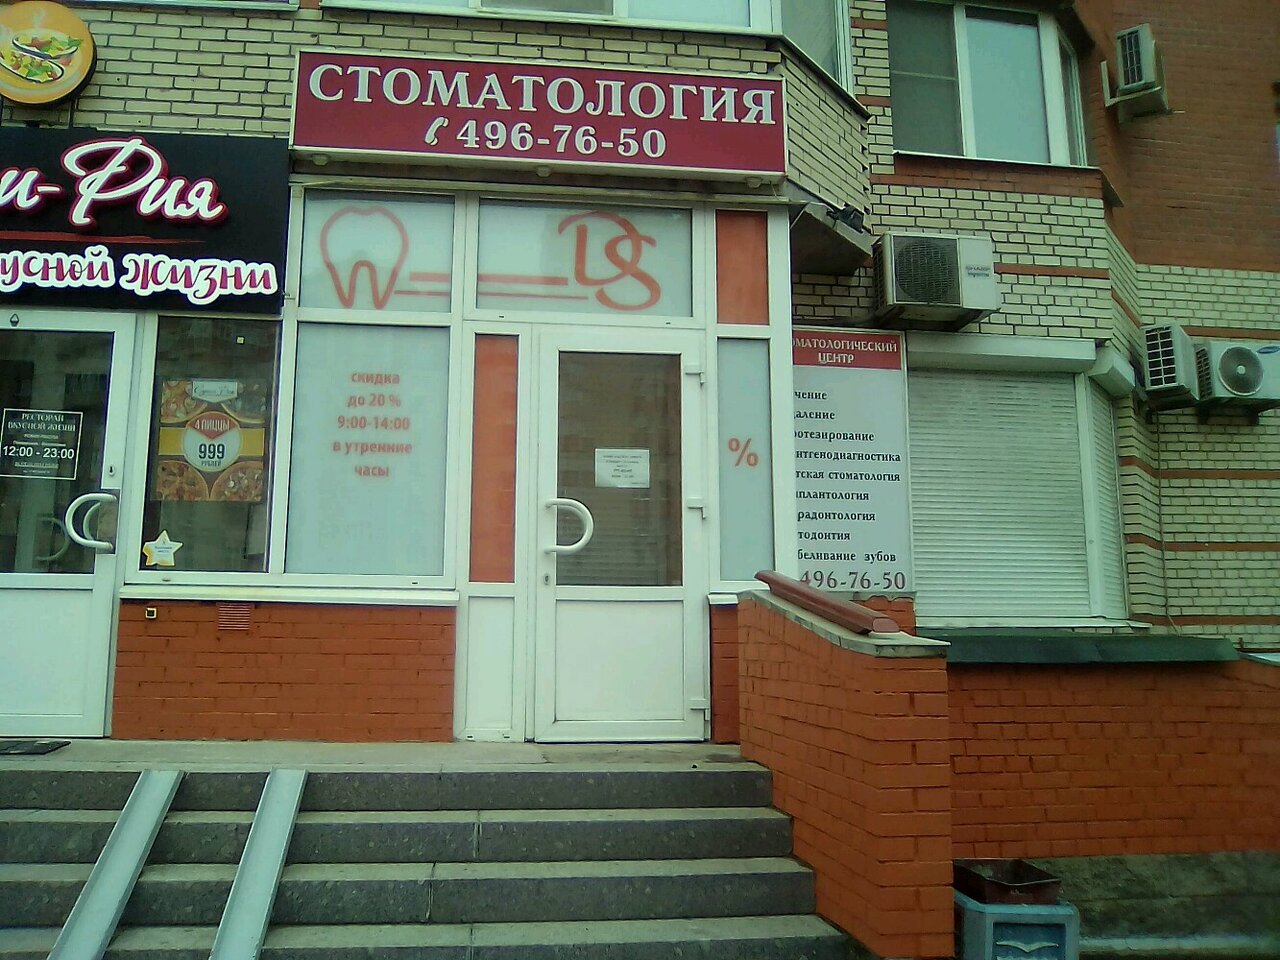 Стоматологическая клиника Ds, Казань, ул. Савушкина, 135 корпус 4